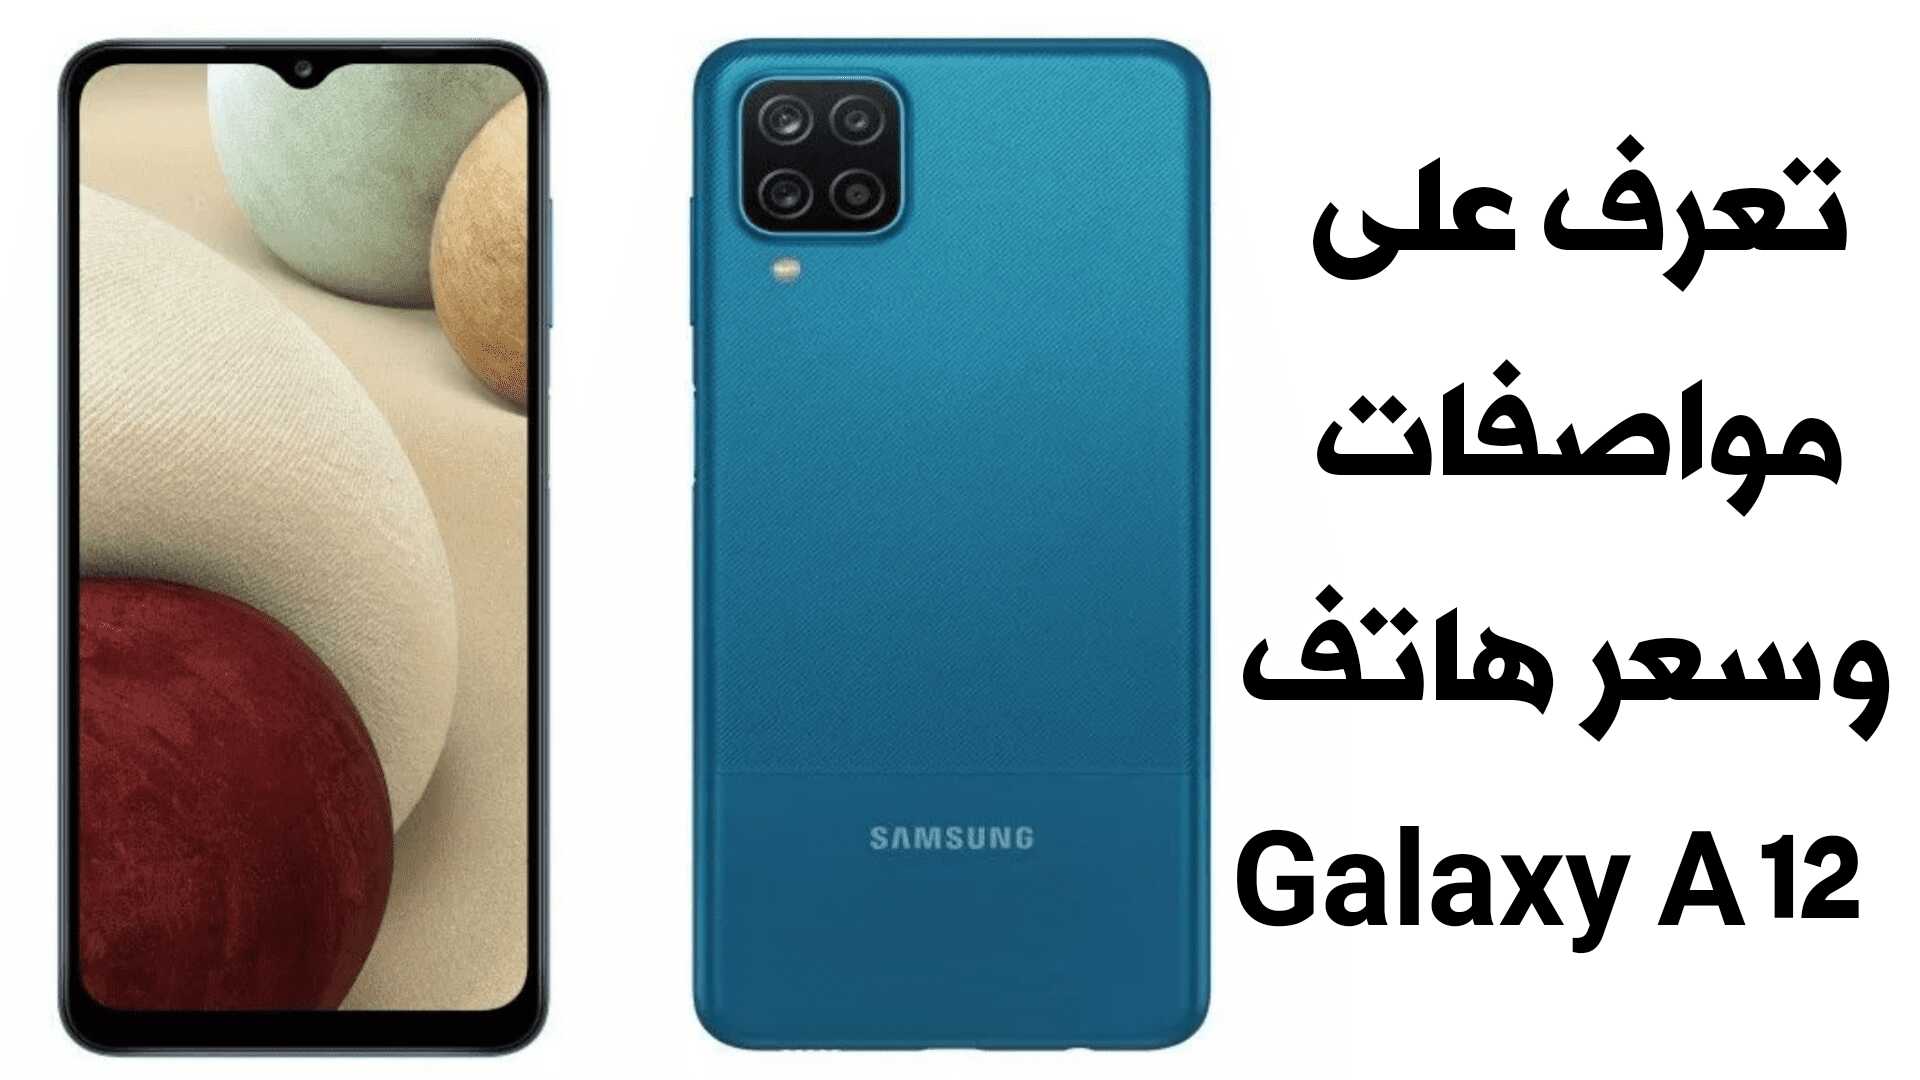 هاتف Galaxy A12 الجديد من Samsung السعر والمواصفات